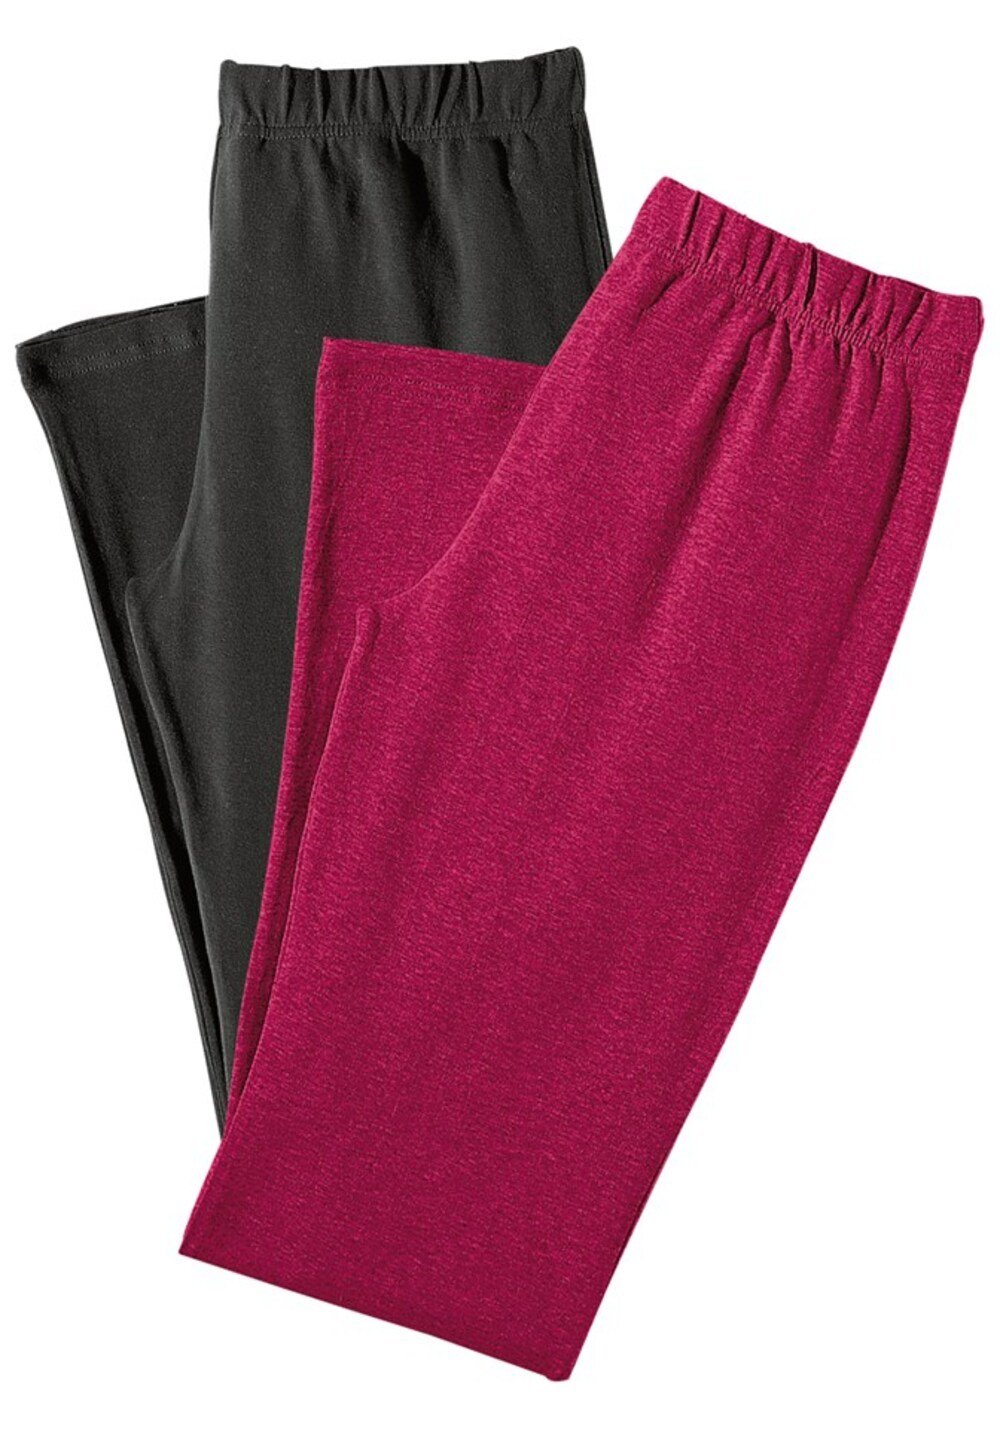 Узкие пижамные брюки VIVANCE, малиновый узкие леггинсы vivance малиновый